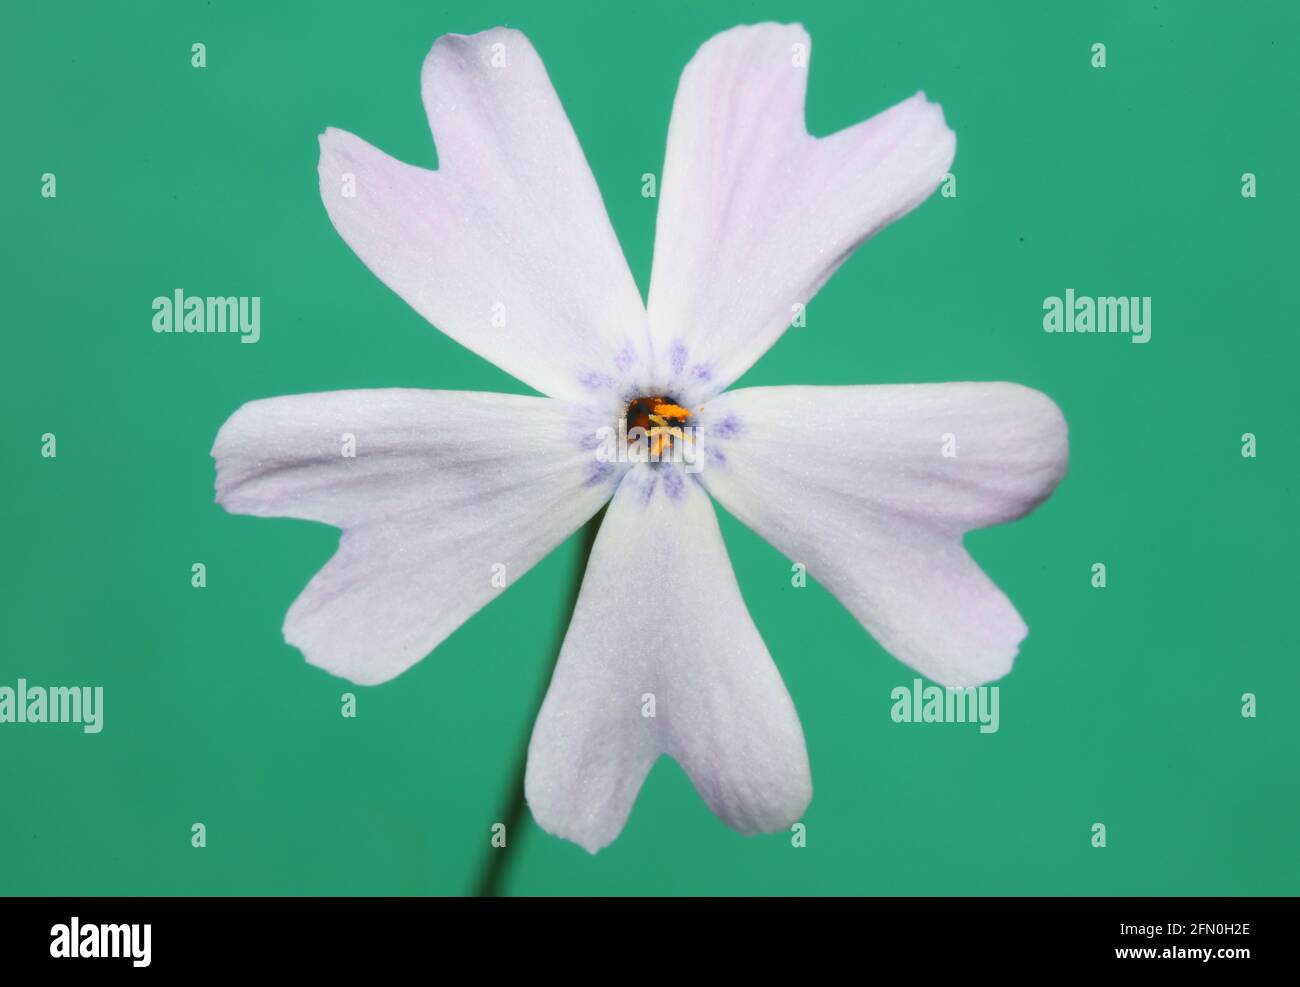 Weiße Blume blüht Nahaufnahme Phlox sabulata L. Familie polemoniaceae in grünem Hintergrund botanische moderne hohe Qualität groß pädagogische Drucke Stockfoto